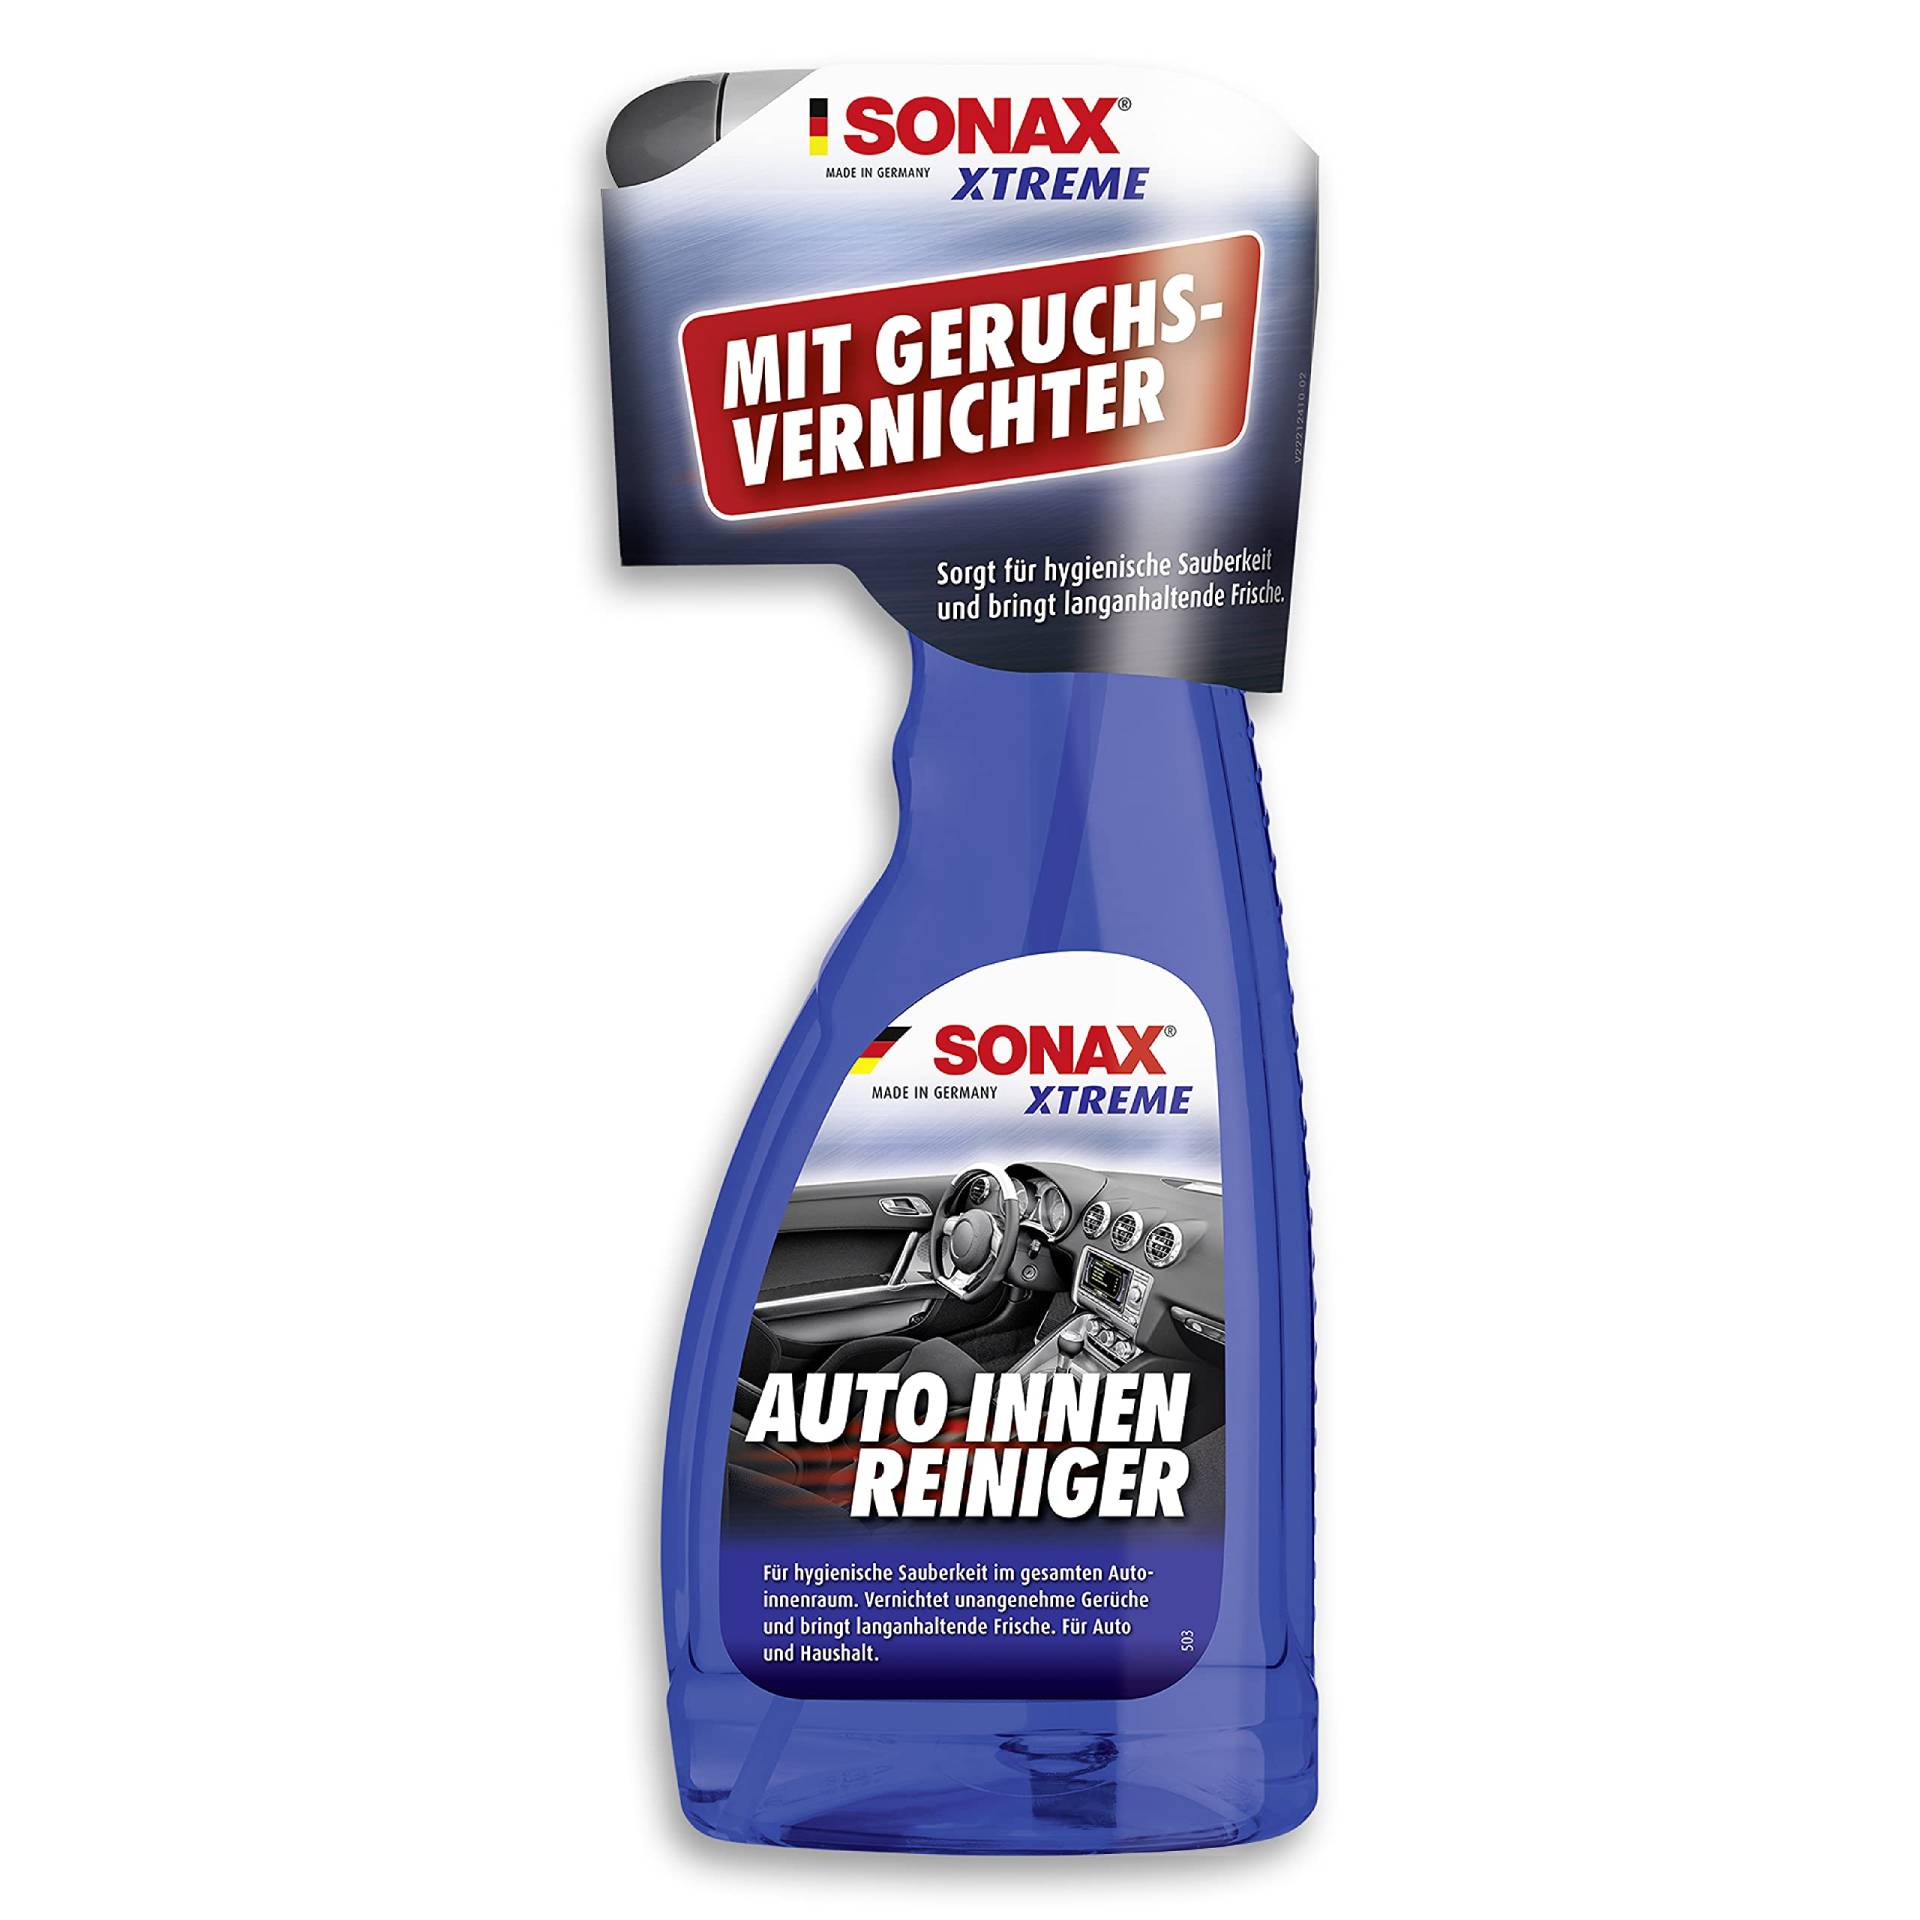 SONAX XTREME AutoInnenReiniger (500 ml) speziell für hygienische Sauberkeit im Auto und Haushalt | Art-Nr. 02212410 von SONAX